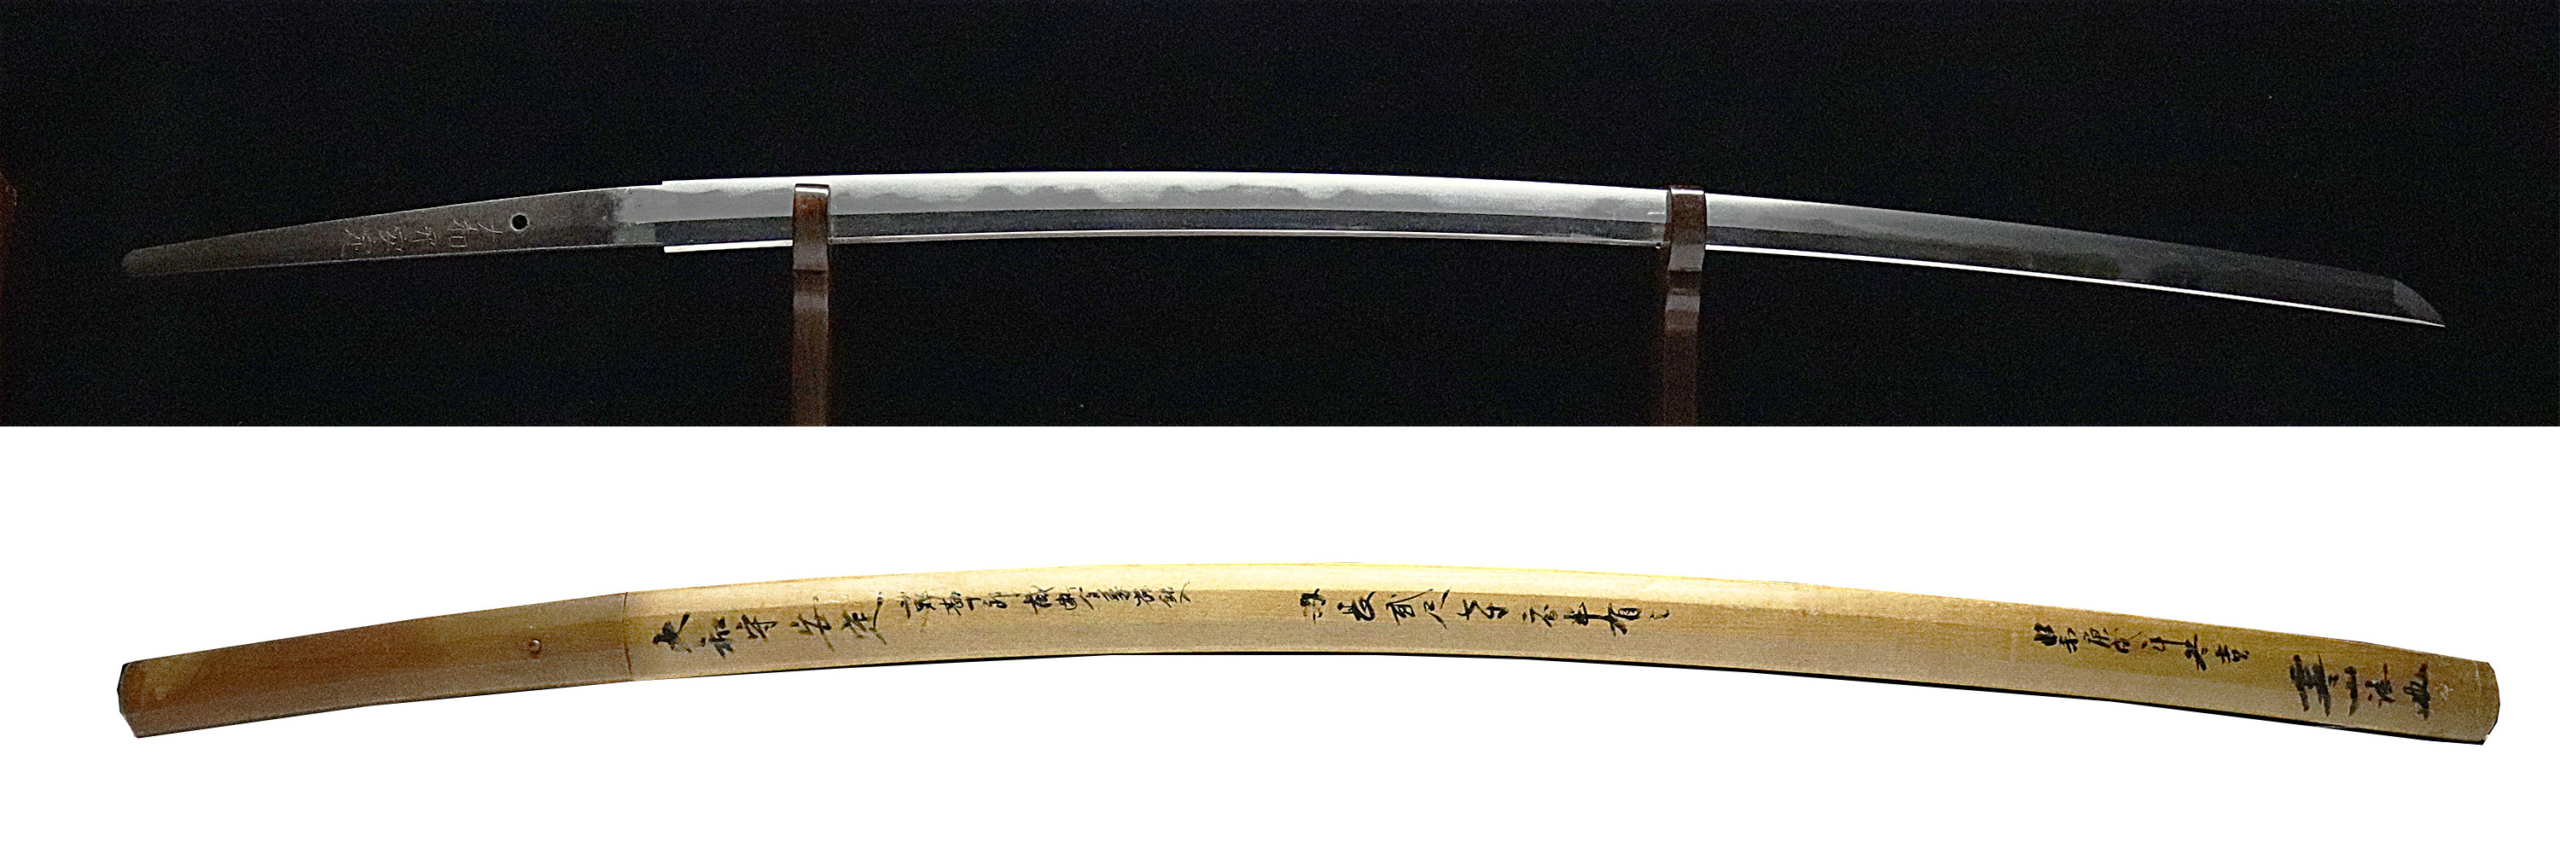 日本刀 刀剣販売 通販の 勇進堂 Japanese Samurai Sword Shop Yushindou